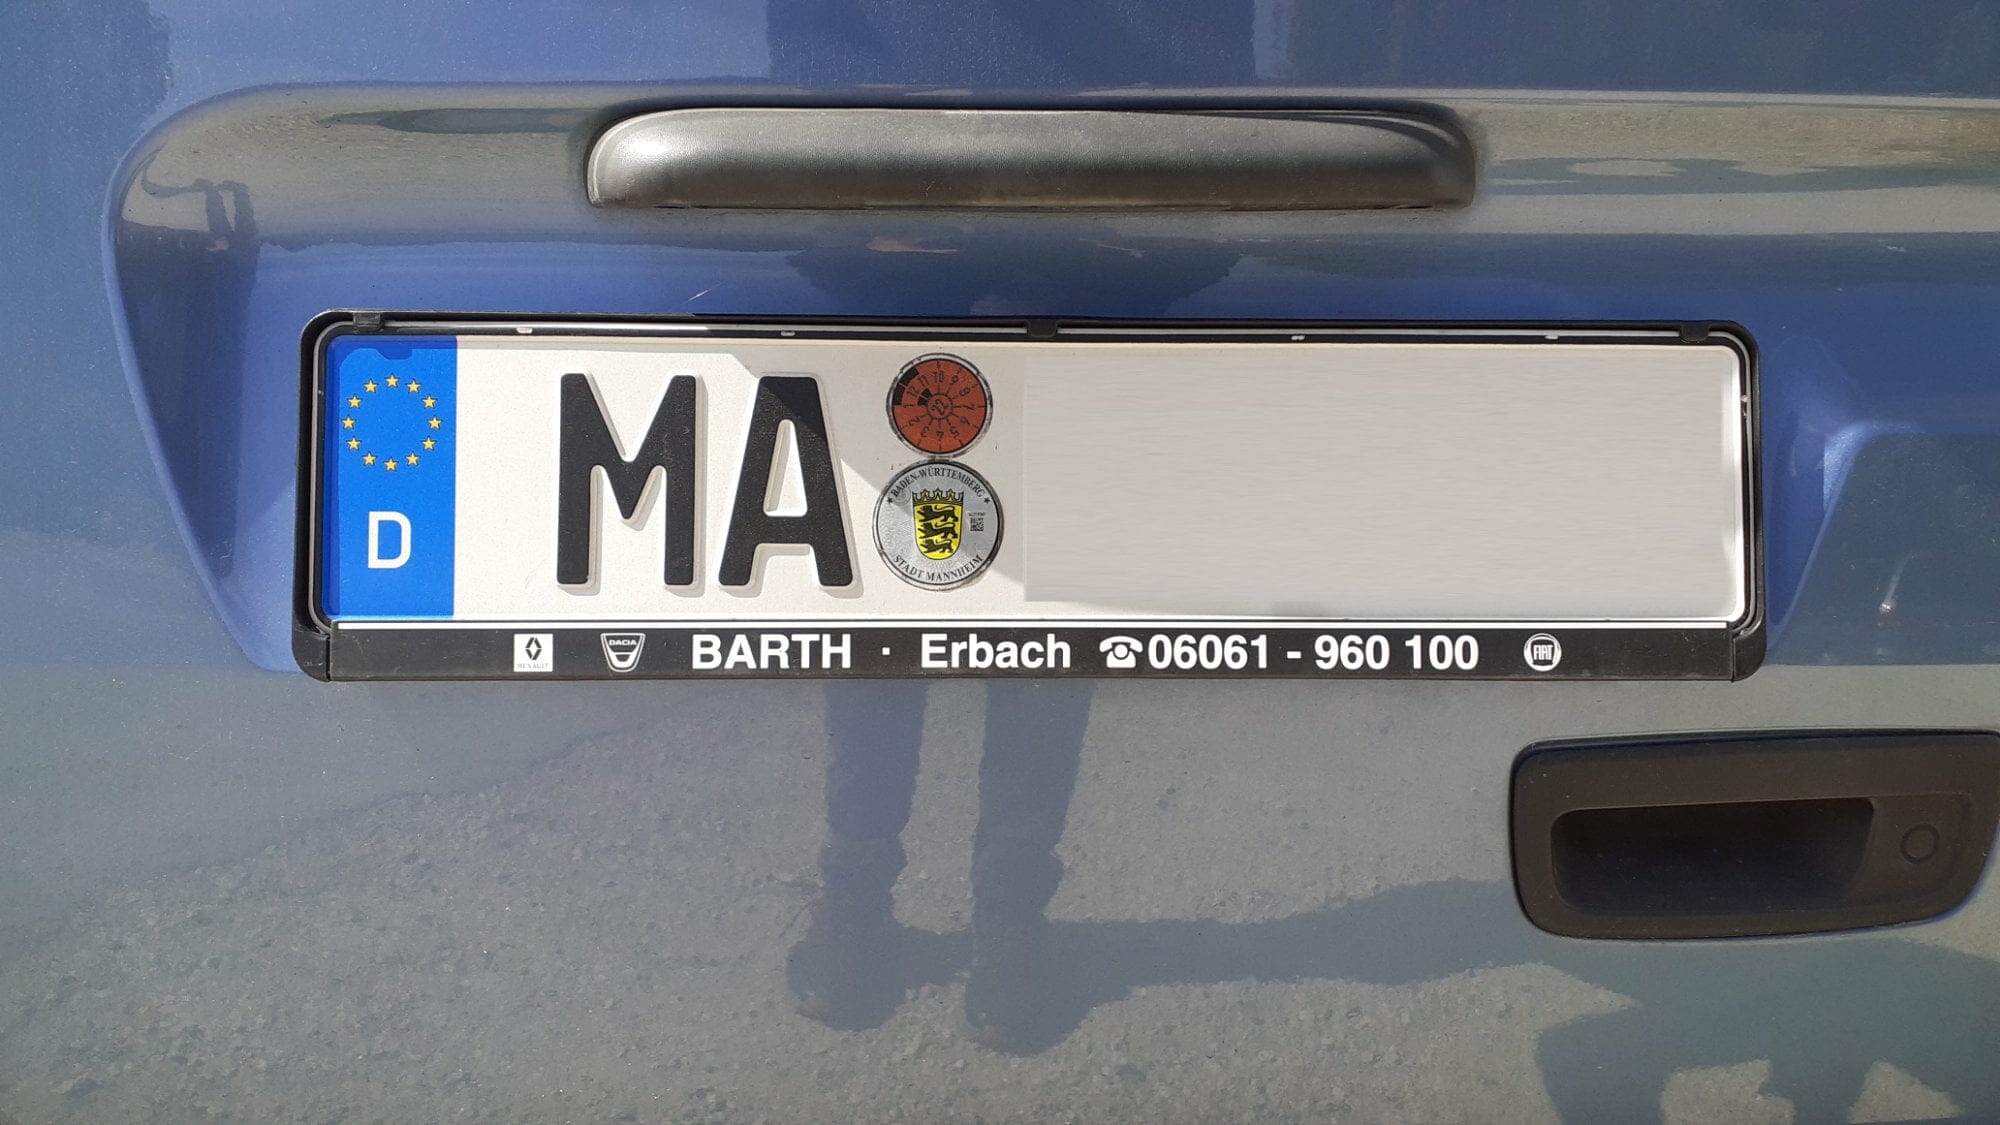 Kennzeichen MA - Wofür steht das Nummernschild? - Mannheim